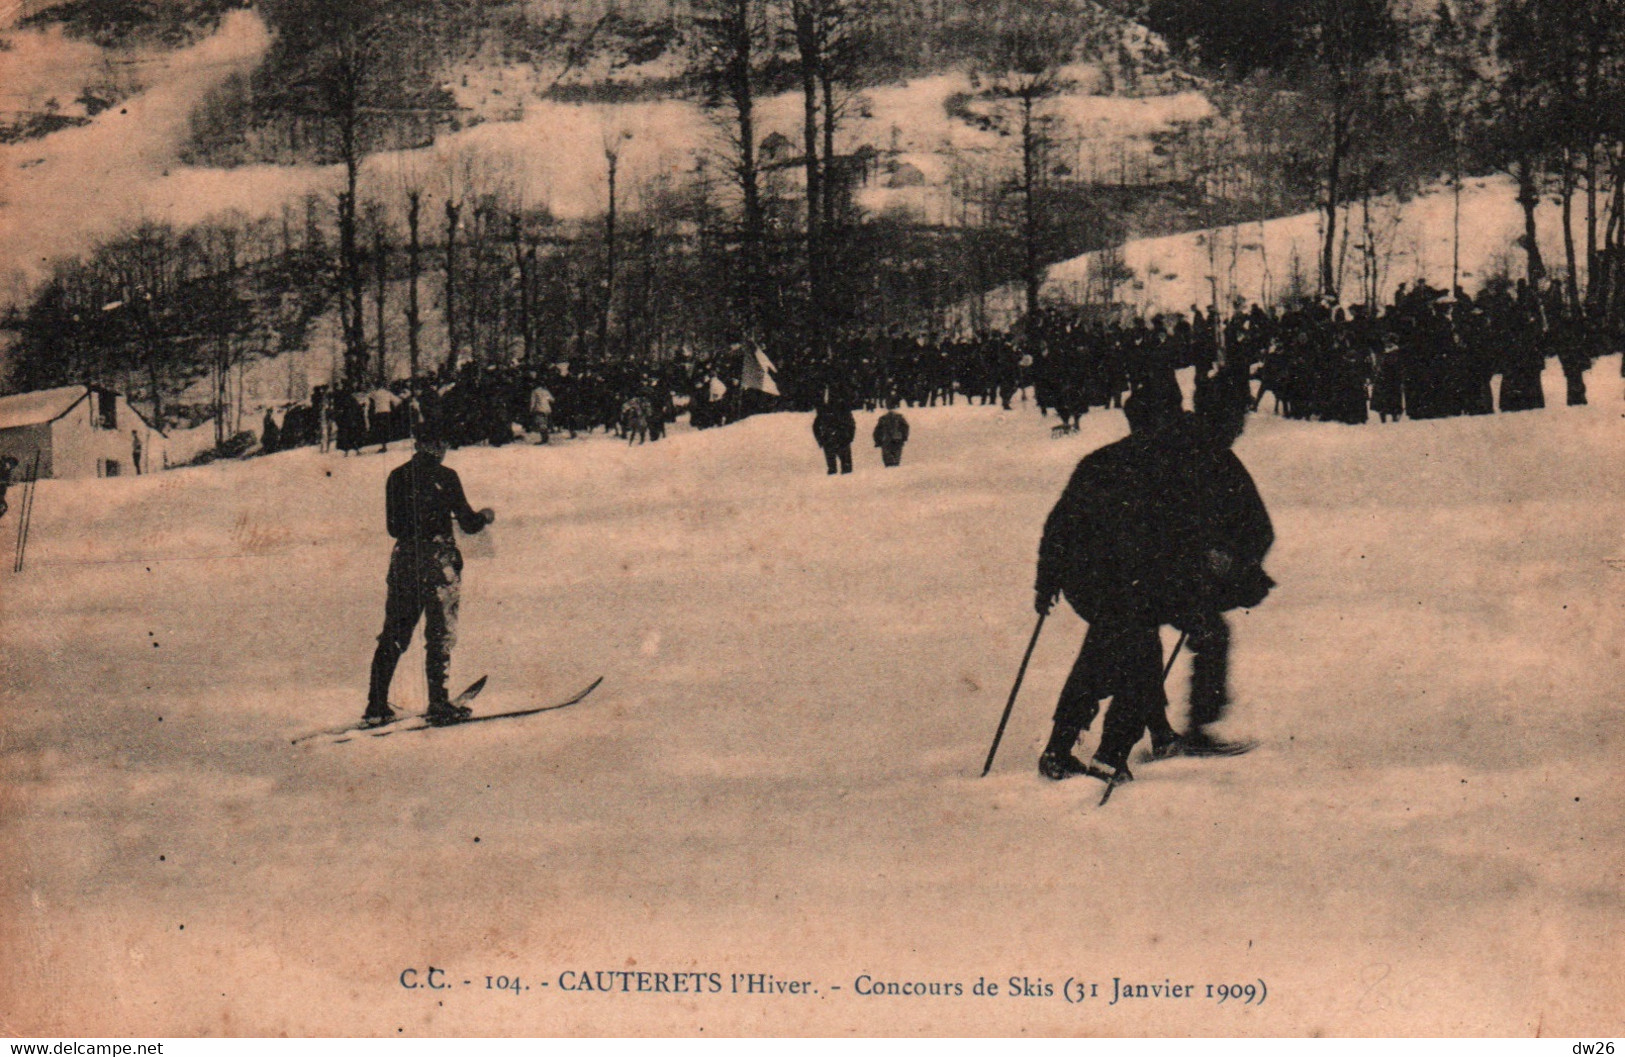 Sports D'Hiver, Ski - Cauterets L'hiver - Concours De Skis Le 31 Janvier 1909 - Carte C.C. N° 104 Non Circulée - Winter Sports